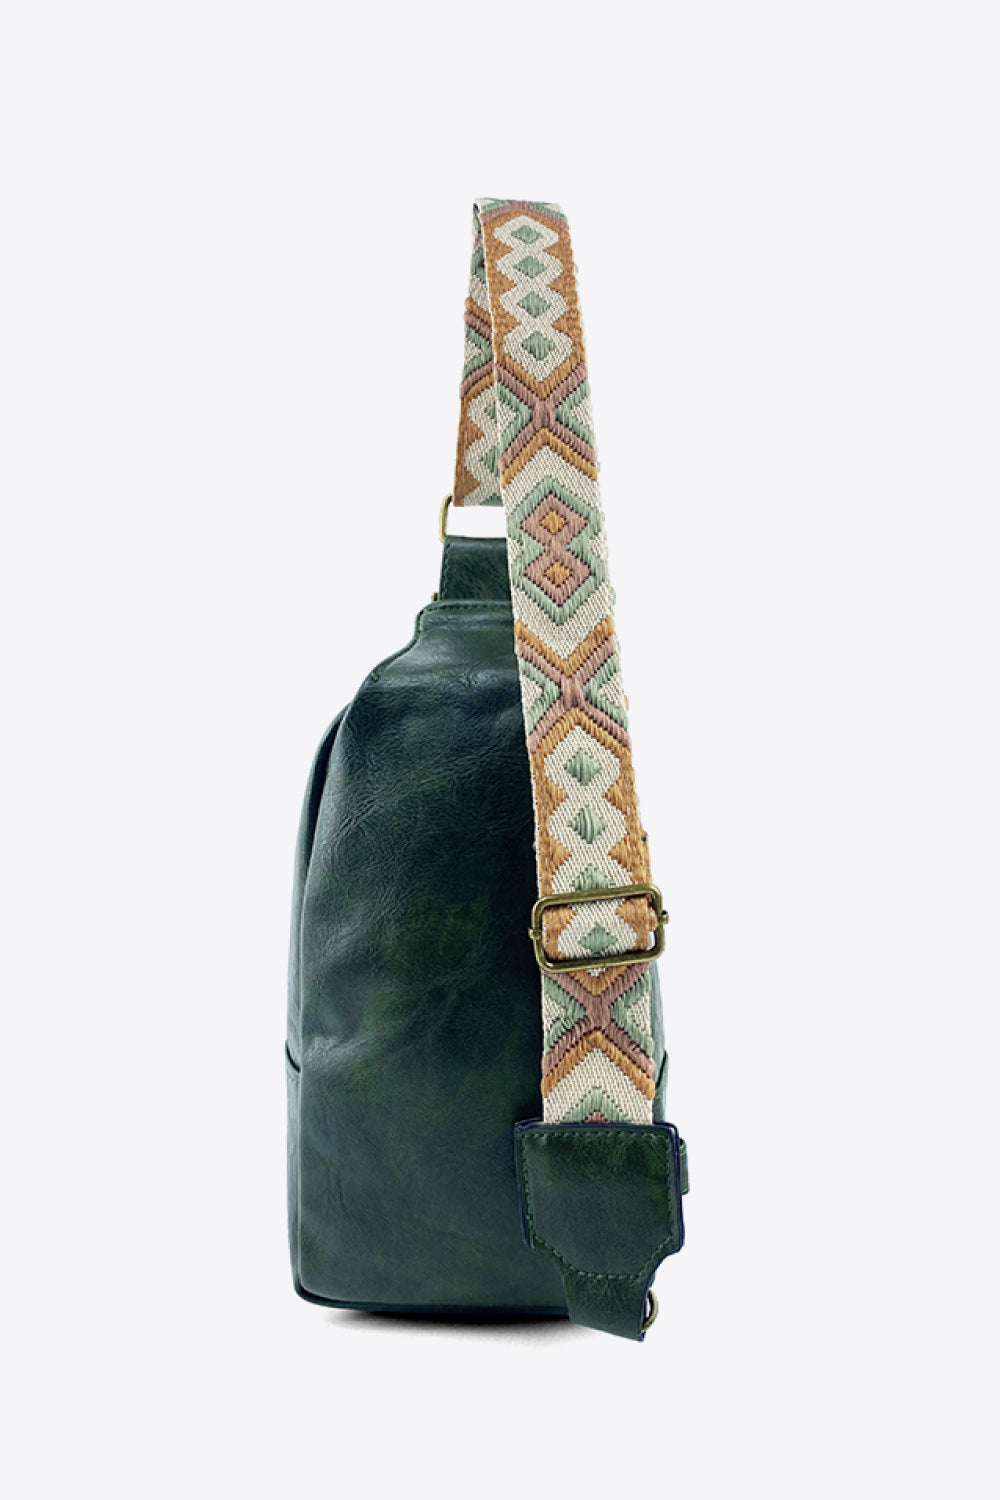 Guitar Adjustable Strap Leather Sling Bag